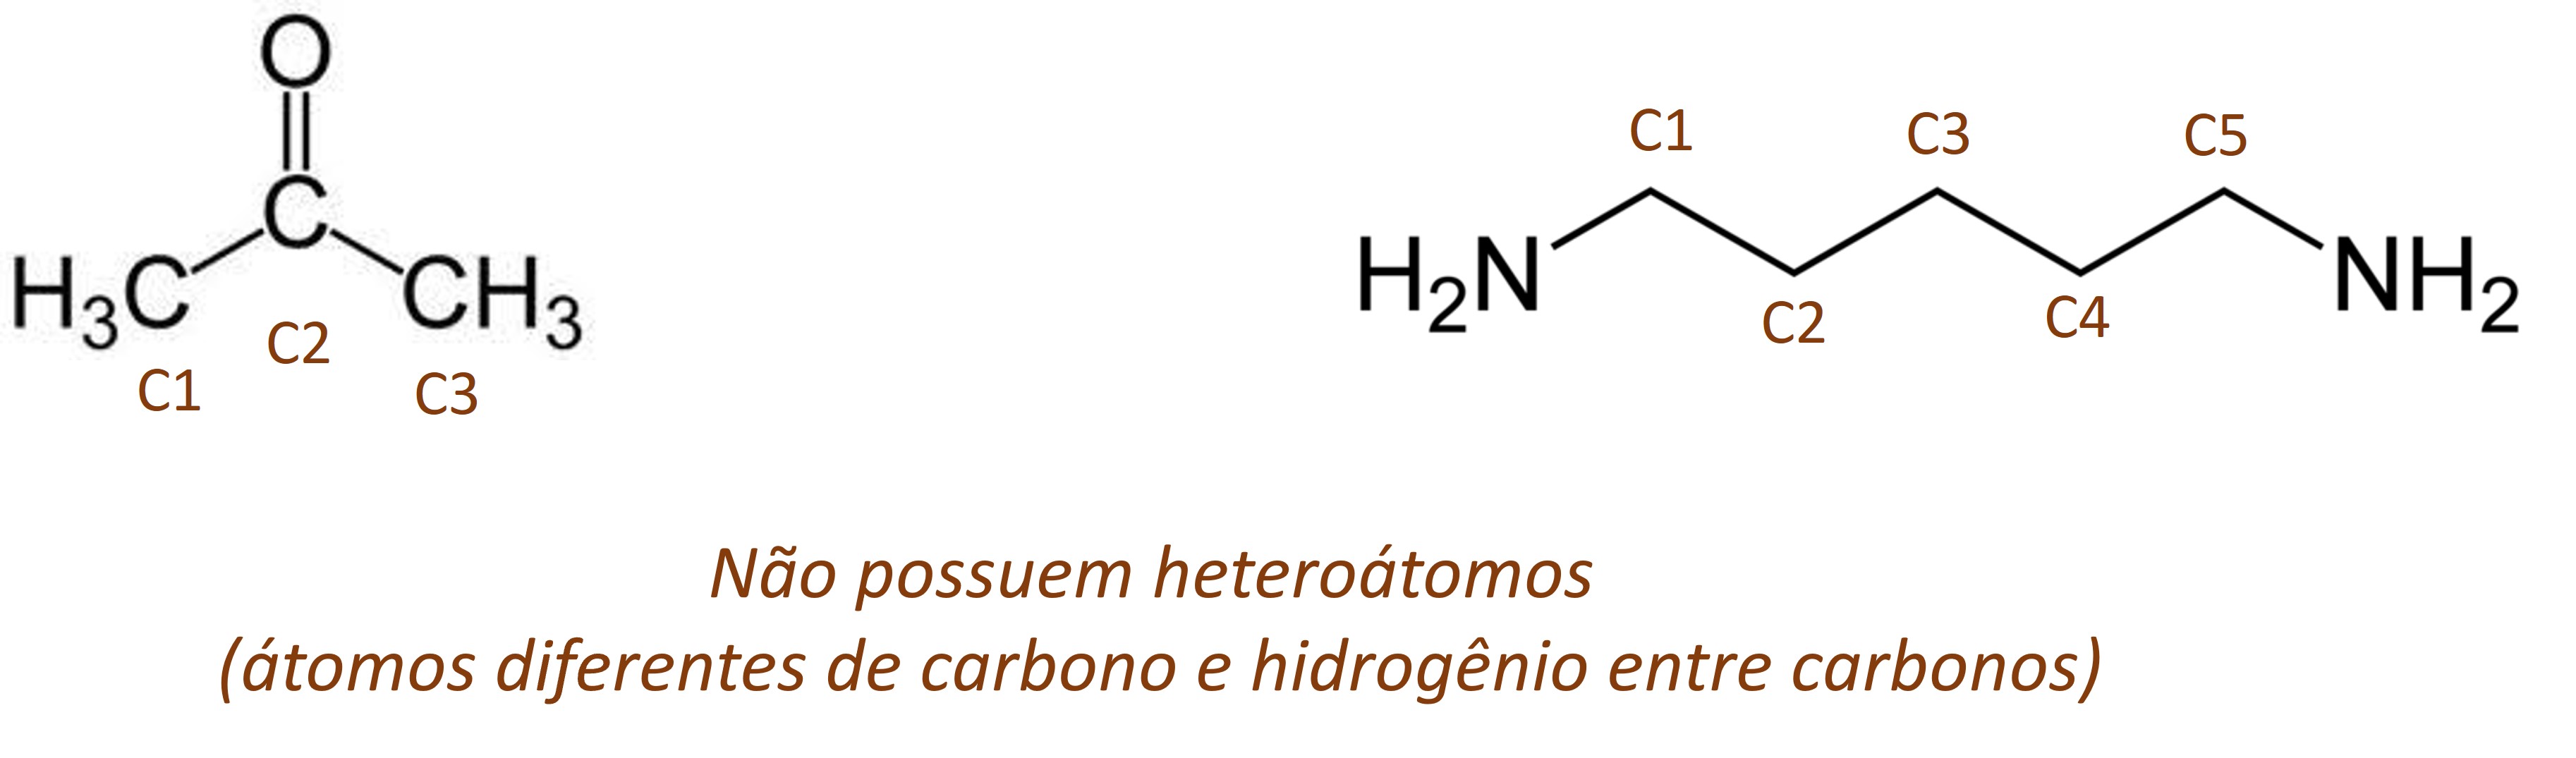 Cadeias carbônicas homogêneas, que não possuem heteroátomos.